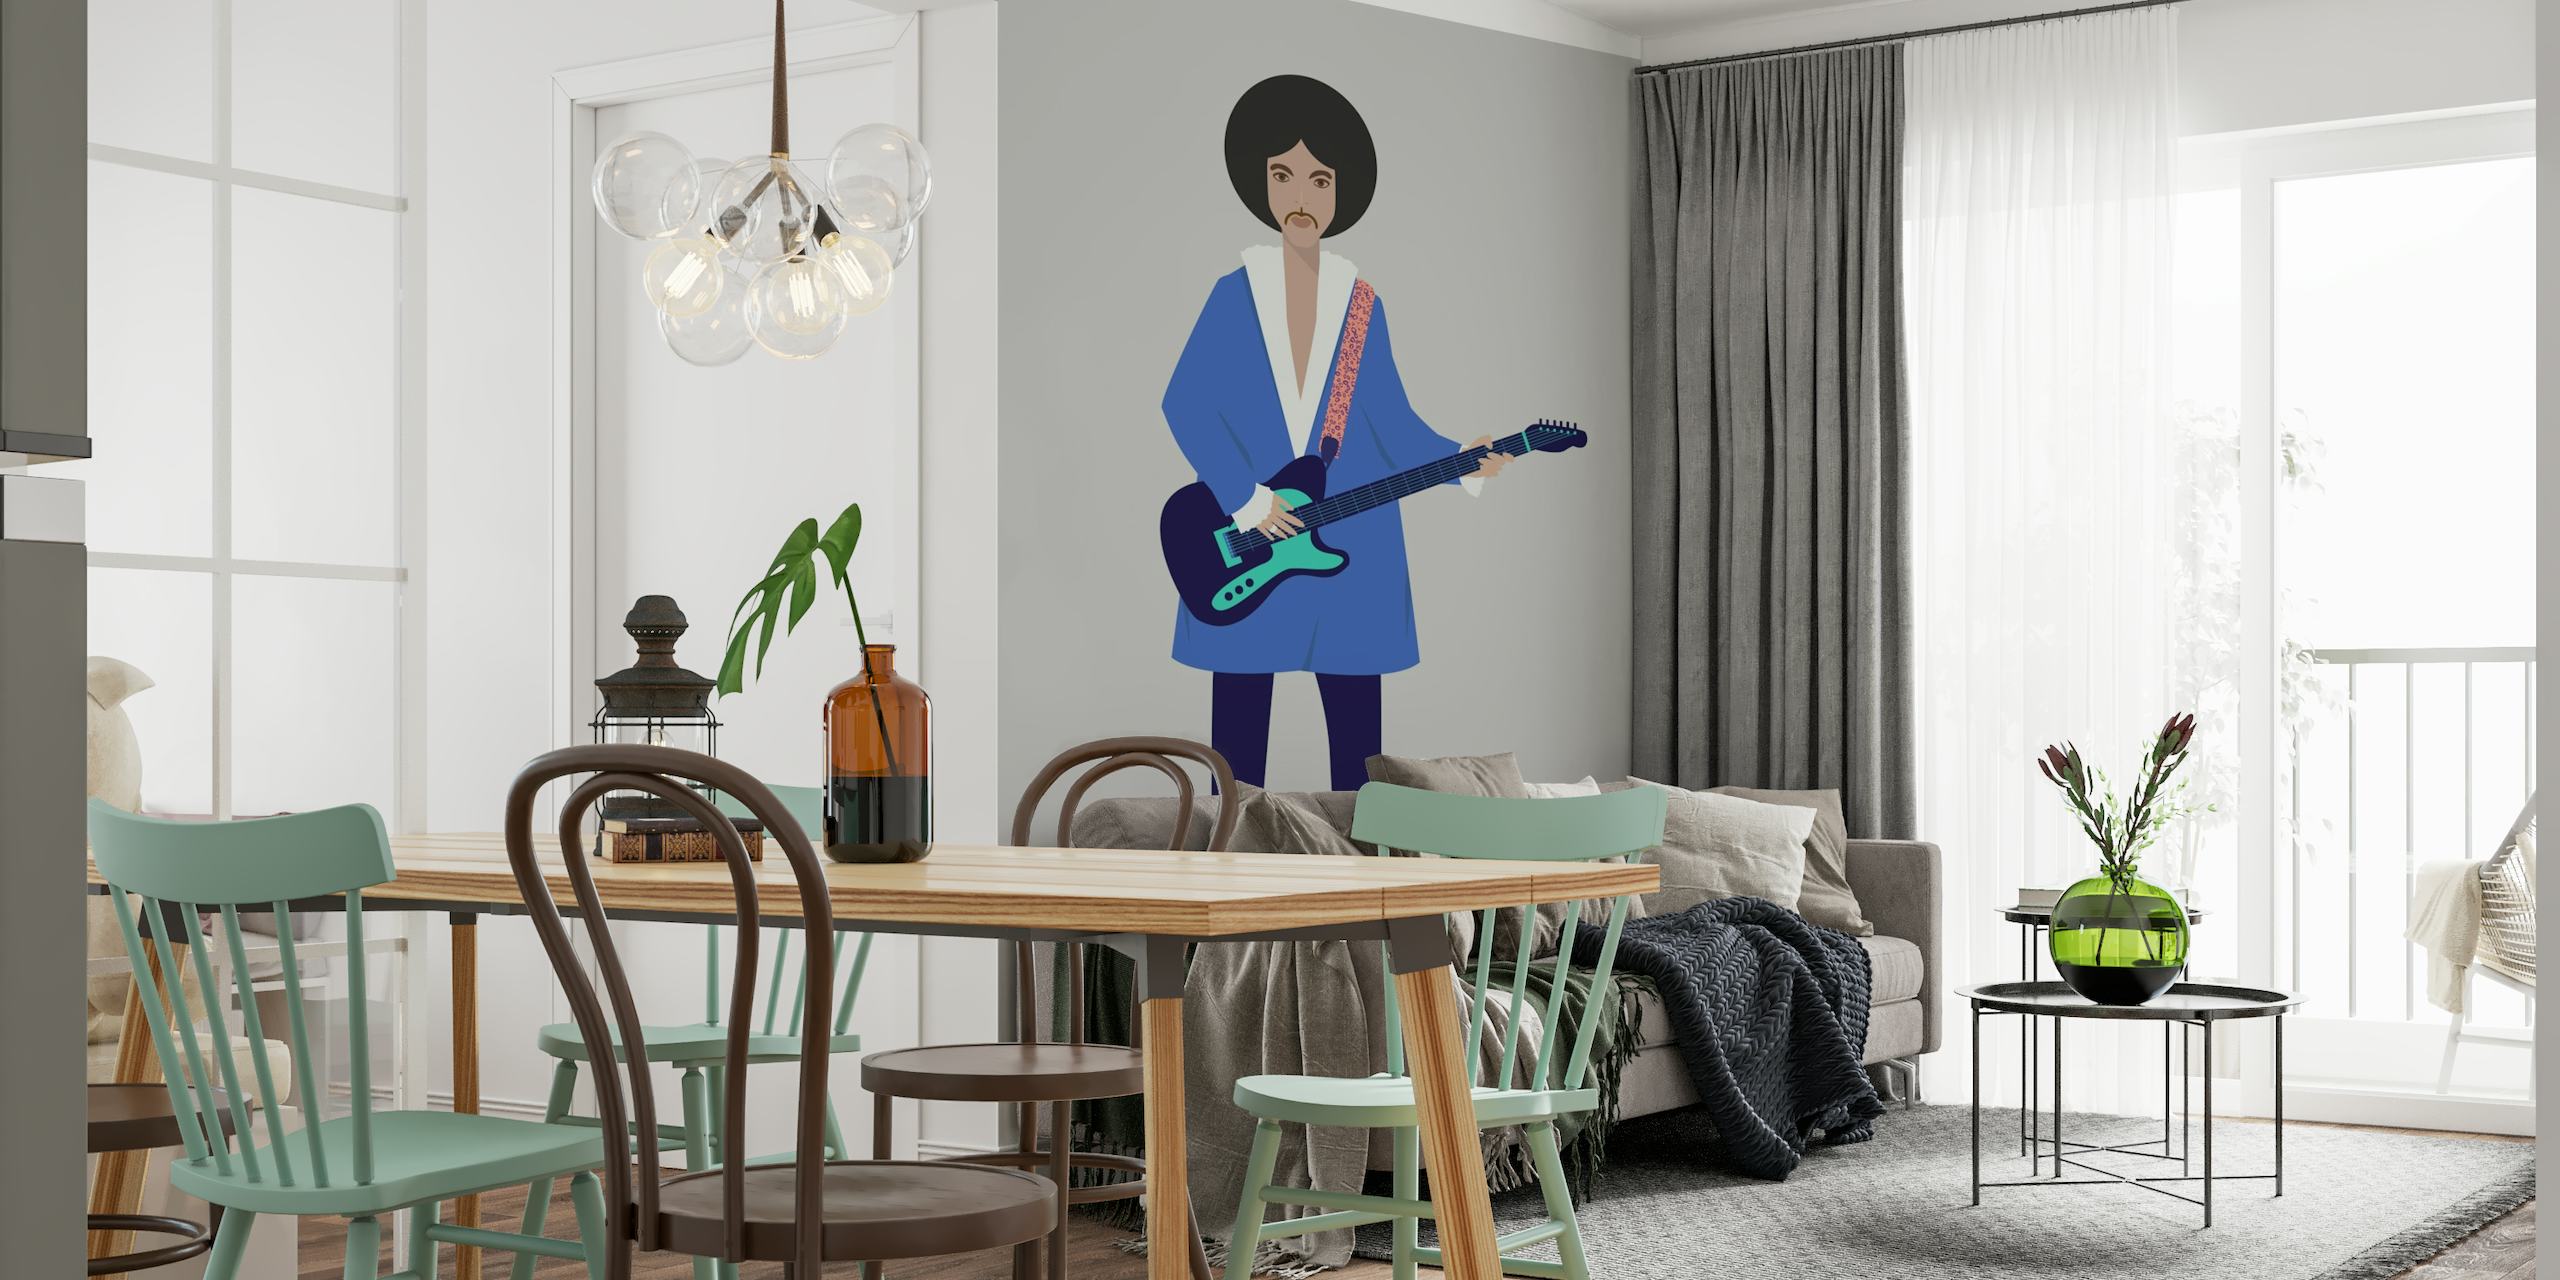 Ilustracyjna fototapeta przedstawiająca osobę z gitarą, ozdobiona nowoczesnym projektem artystycznym